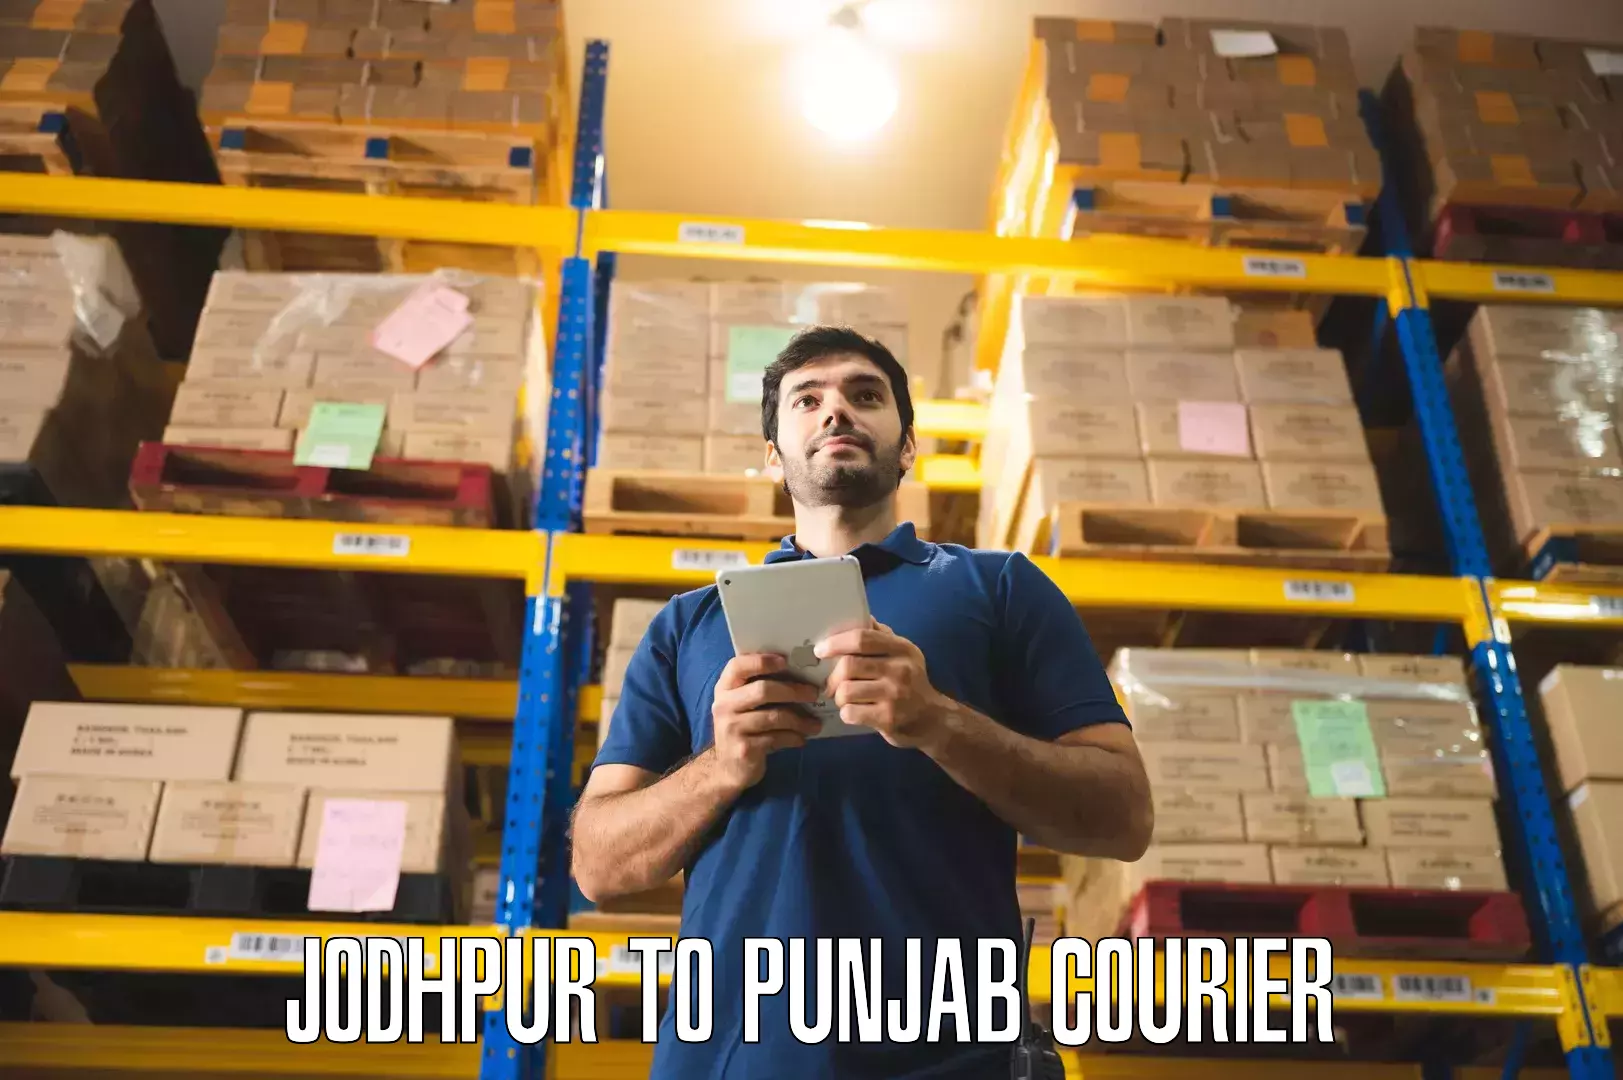 Furniture relocation experts Jodhpur to Punjab